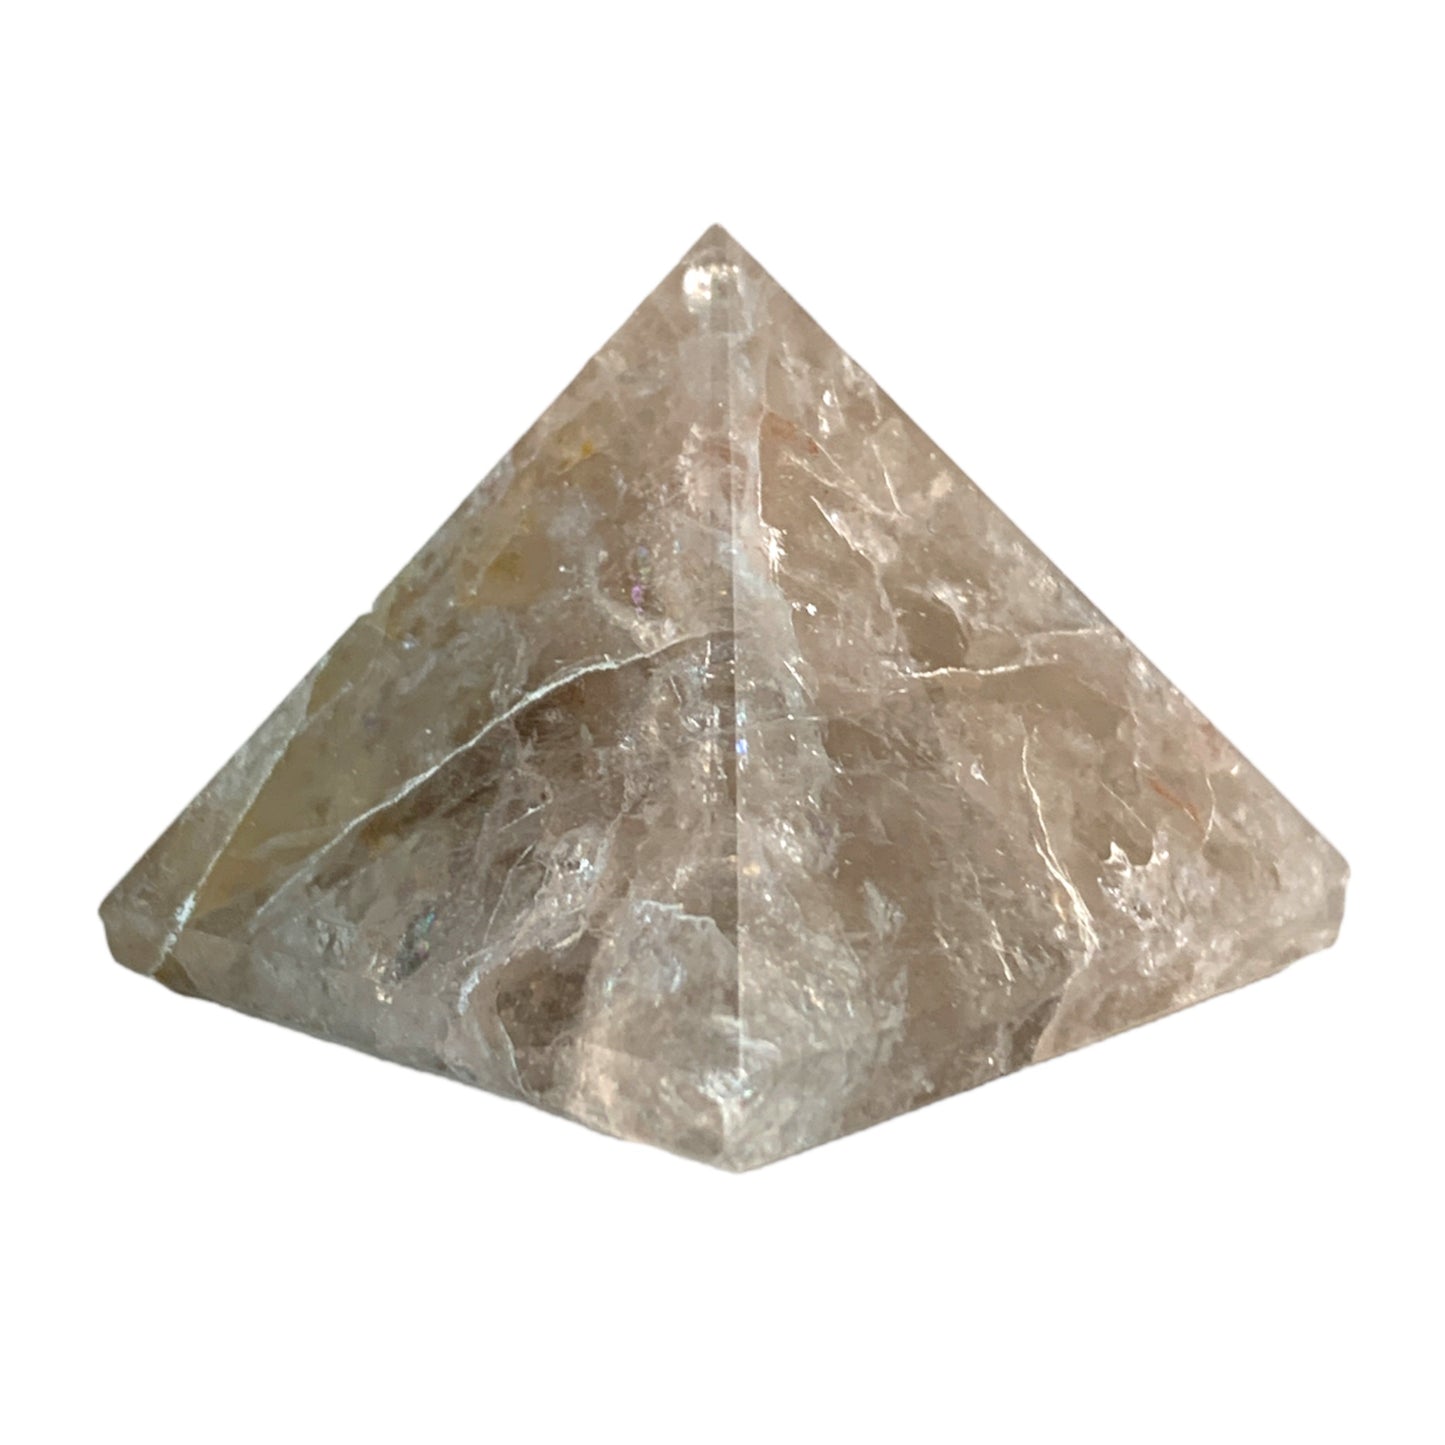 Quartz fumé - Pyramides - 50 à 70 mm - Prix par gramme par pièce (commande B2B 1 = 1 pièce donc nous facturons Ex. 30g = 2,70 $ chacun)